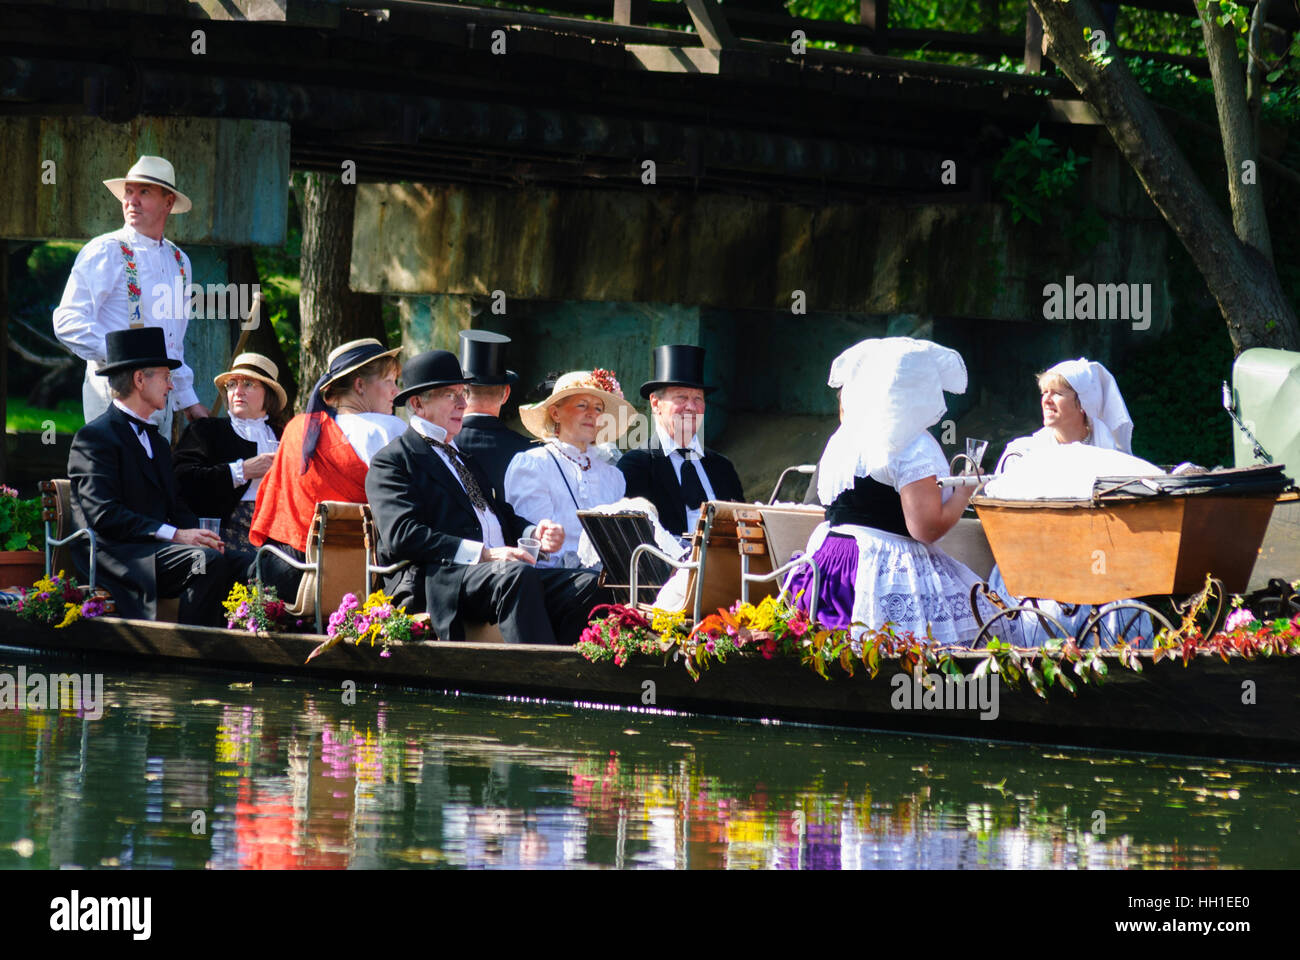 Lübbenau/Spreewald : Petit bateau avec des gens habillés en costume national sur le voyage d'une partie dans le Spreewald , Brandenburg, Allemagne Banque D'Images